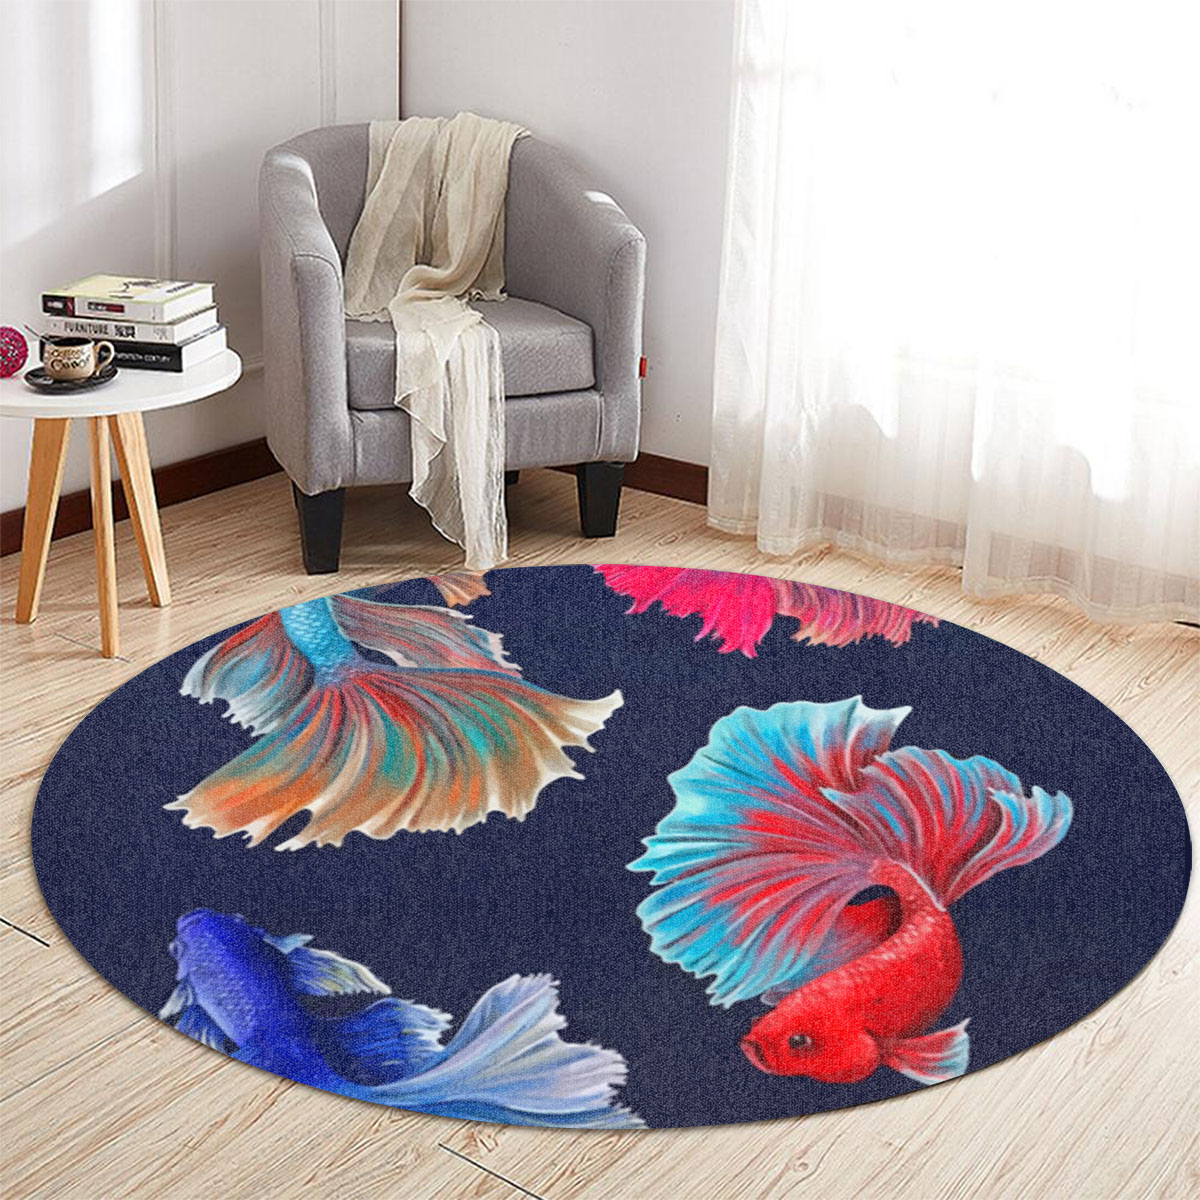 Iconic Four Betta Fish Round Carpet